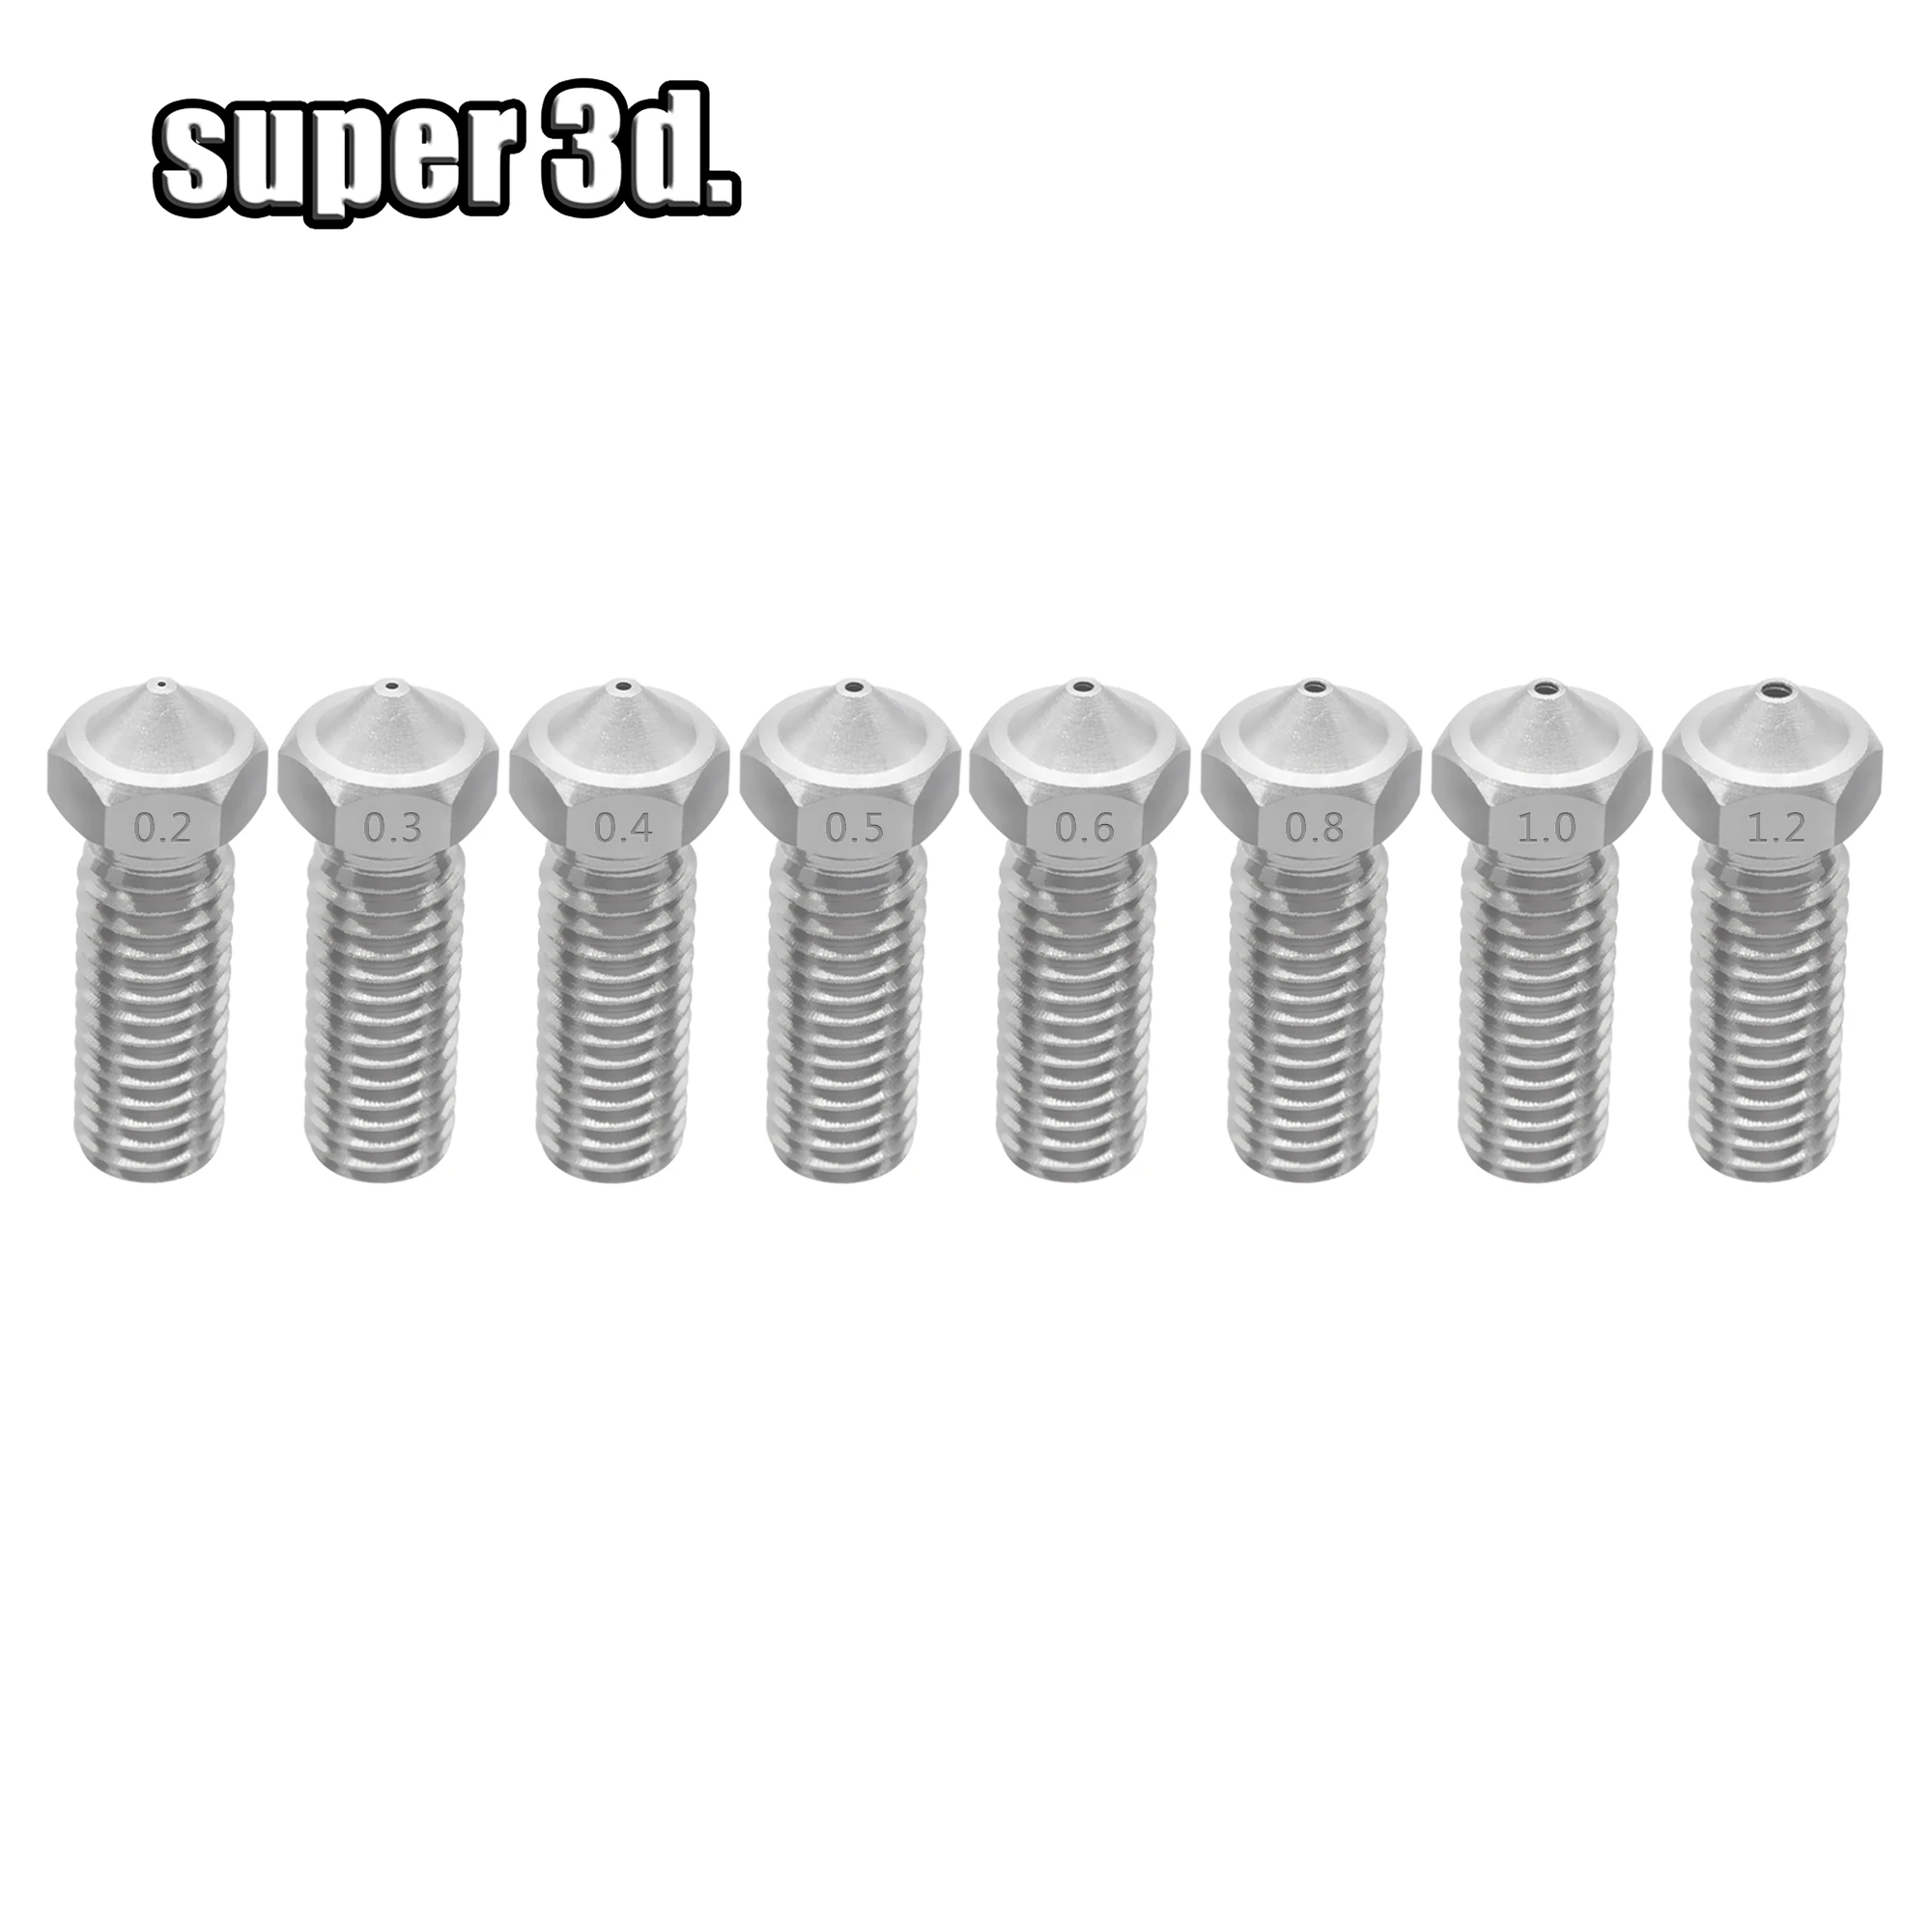 5 шт сопла из нержавеющей стали для 3D-принтера 0,2 мм-1,2 мм для 1,75/3,0 мм дополнительные удлинительные насадки M6